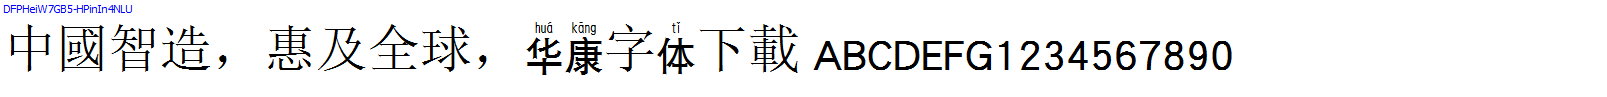 華康字體DFPHeiW7GB5-HPinIn4NLU.TTF